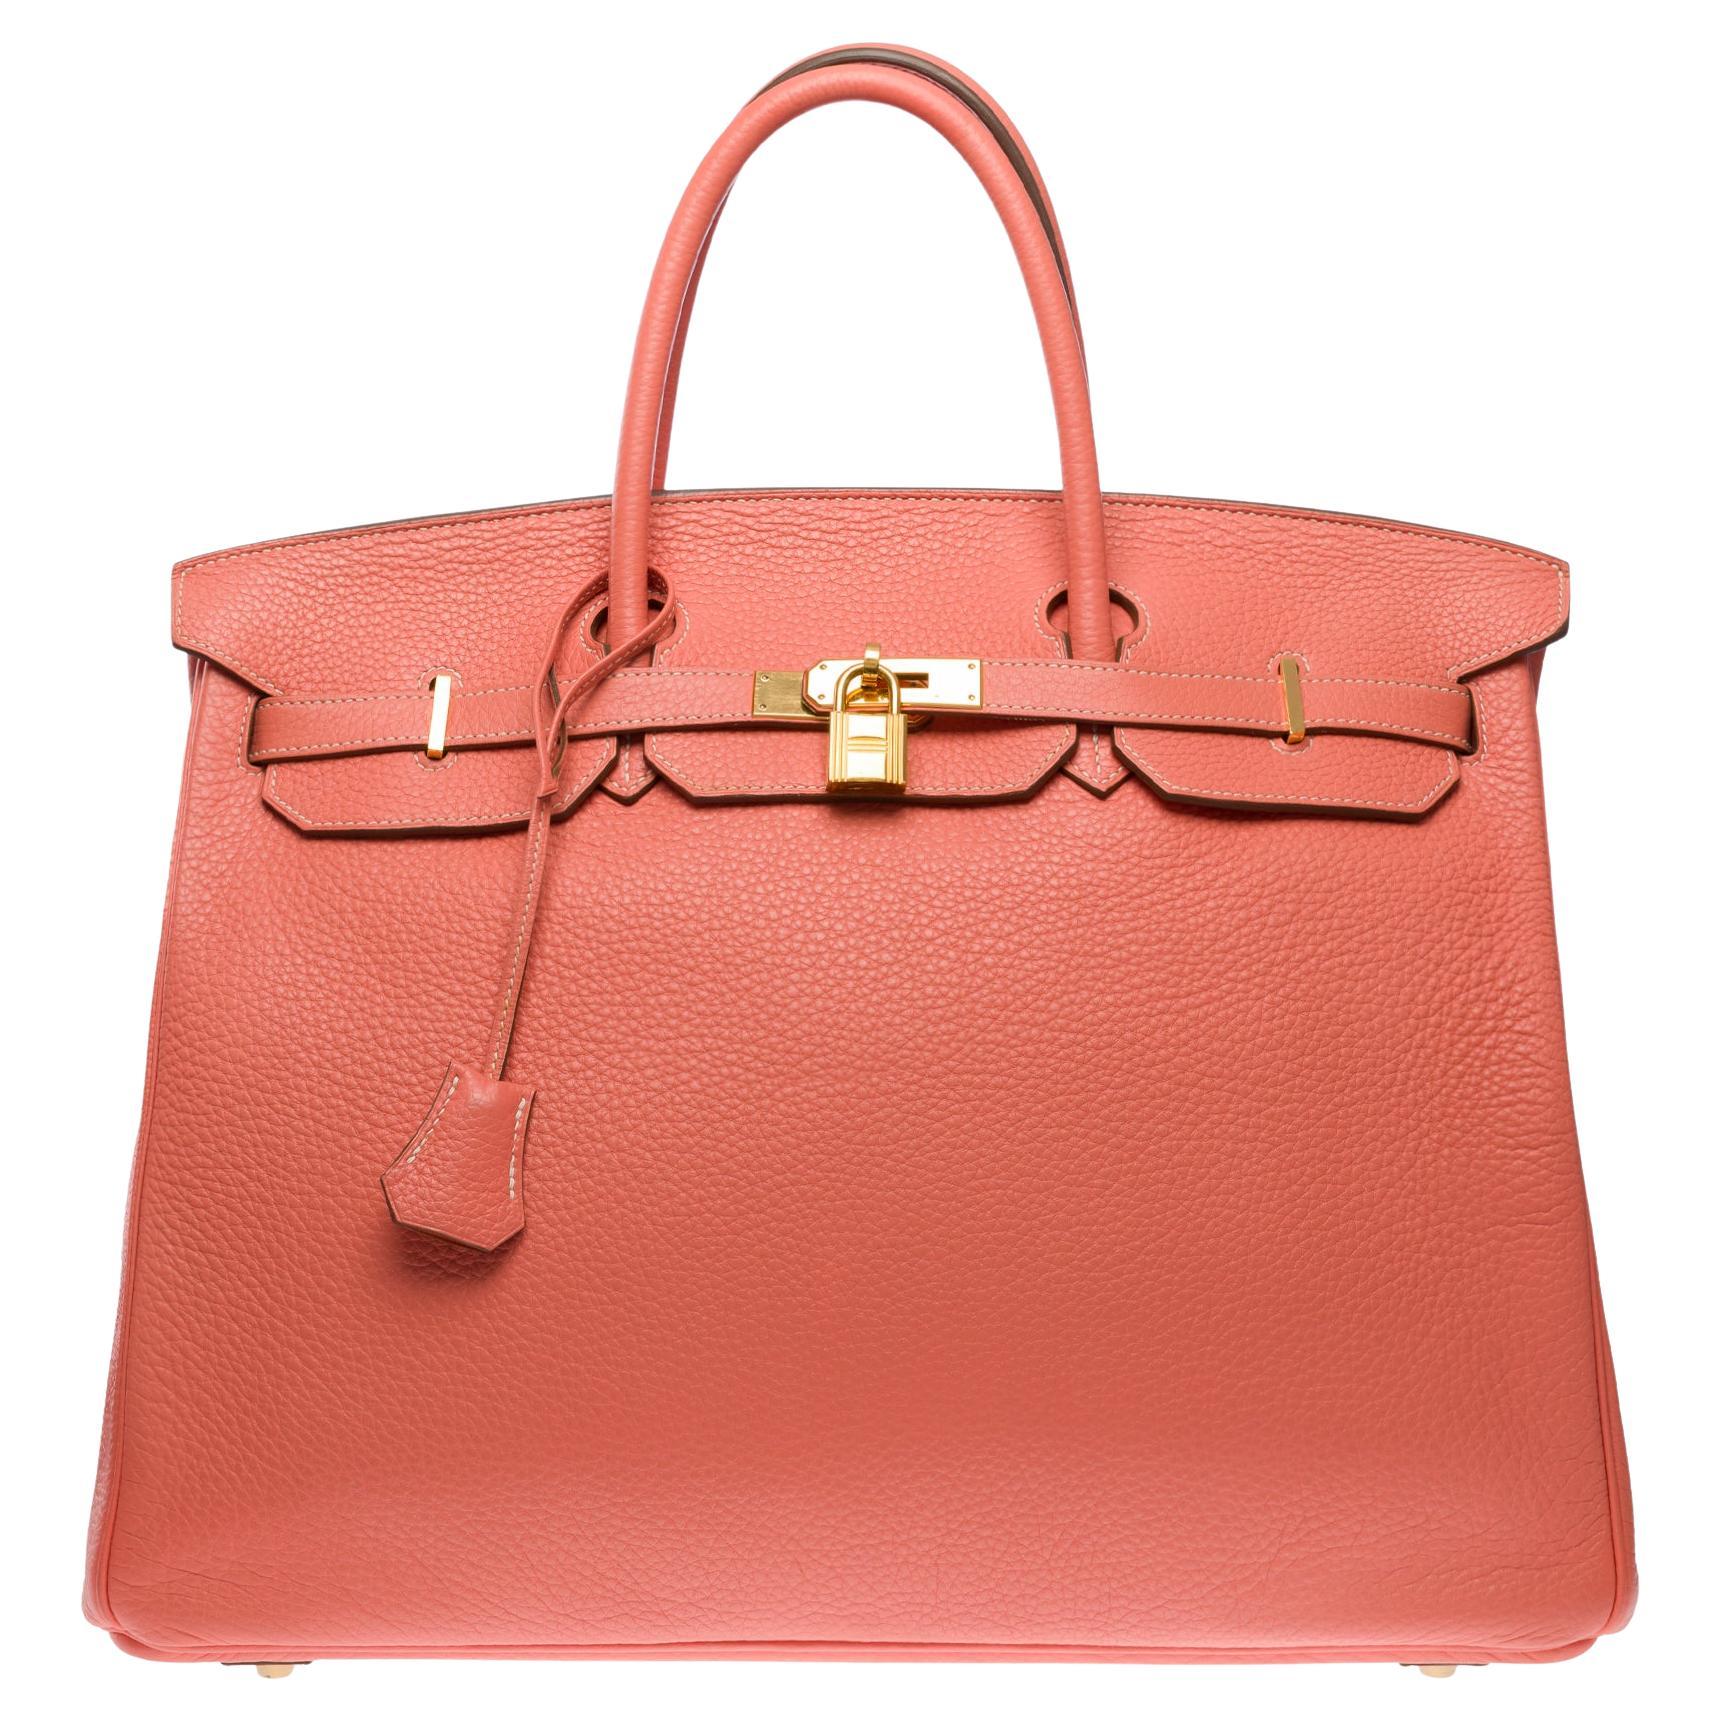 Stunning Hermes Birkin 40cm handbag in Rose Tea Togo leather, GHW For Sale